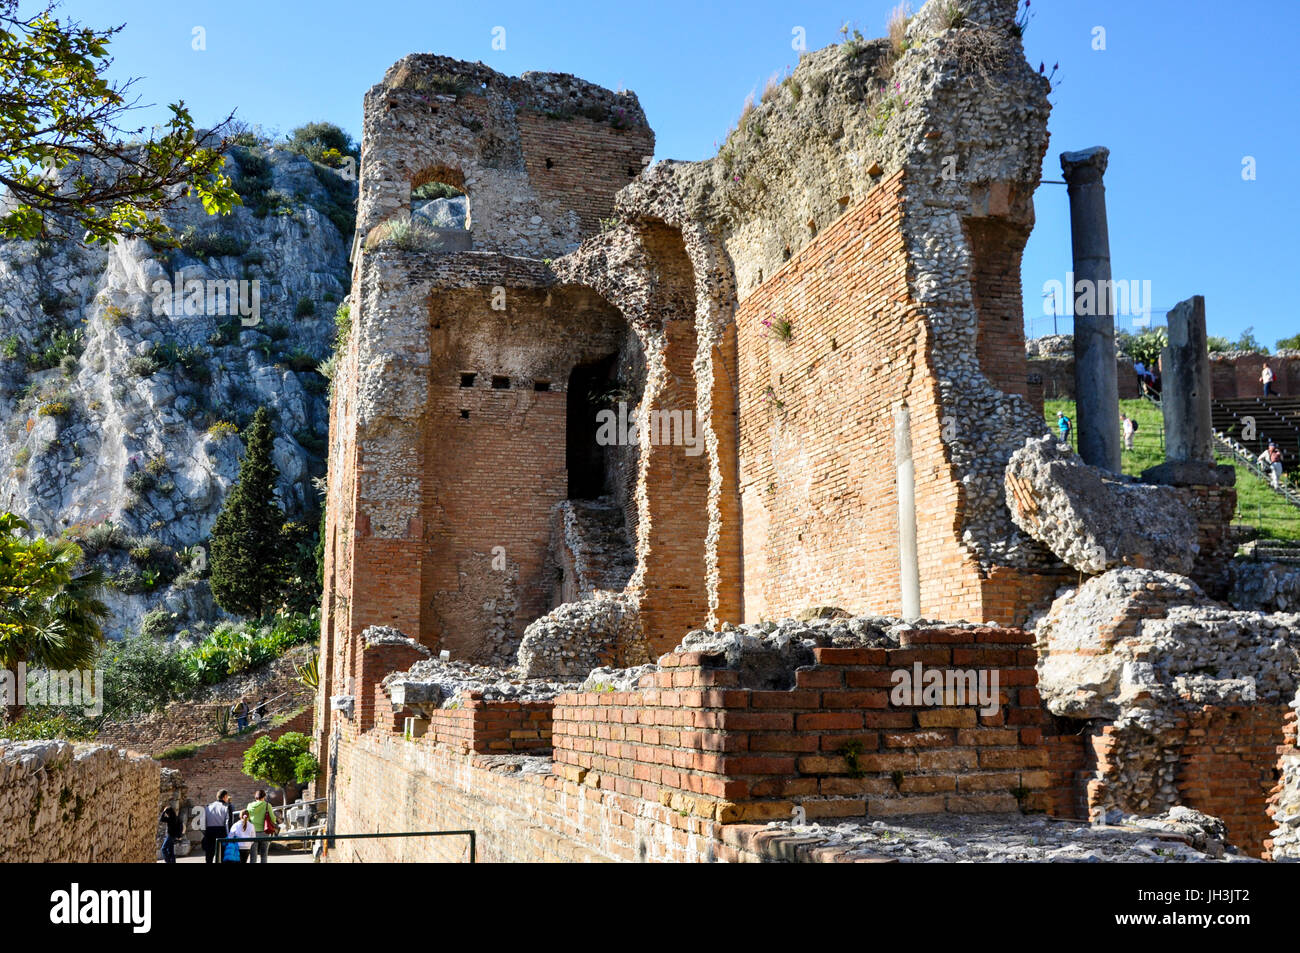 The Greco-Roman ruins of the Ancient Theatre of Taormina, Taormina, Sicily, Italy. Stock Photo